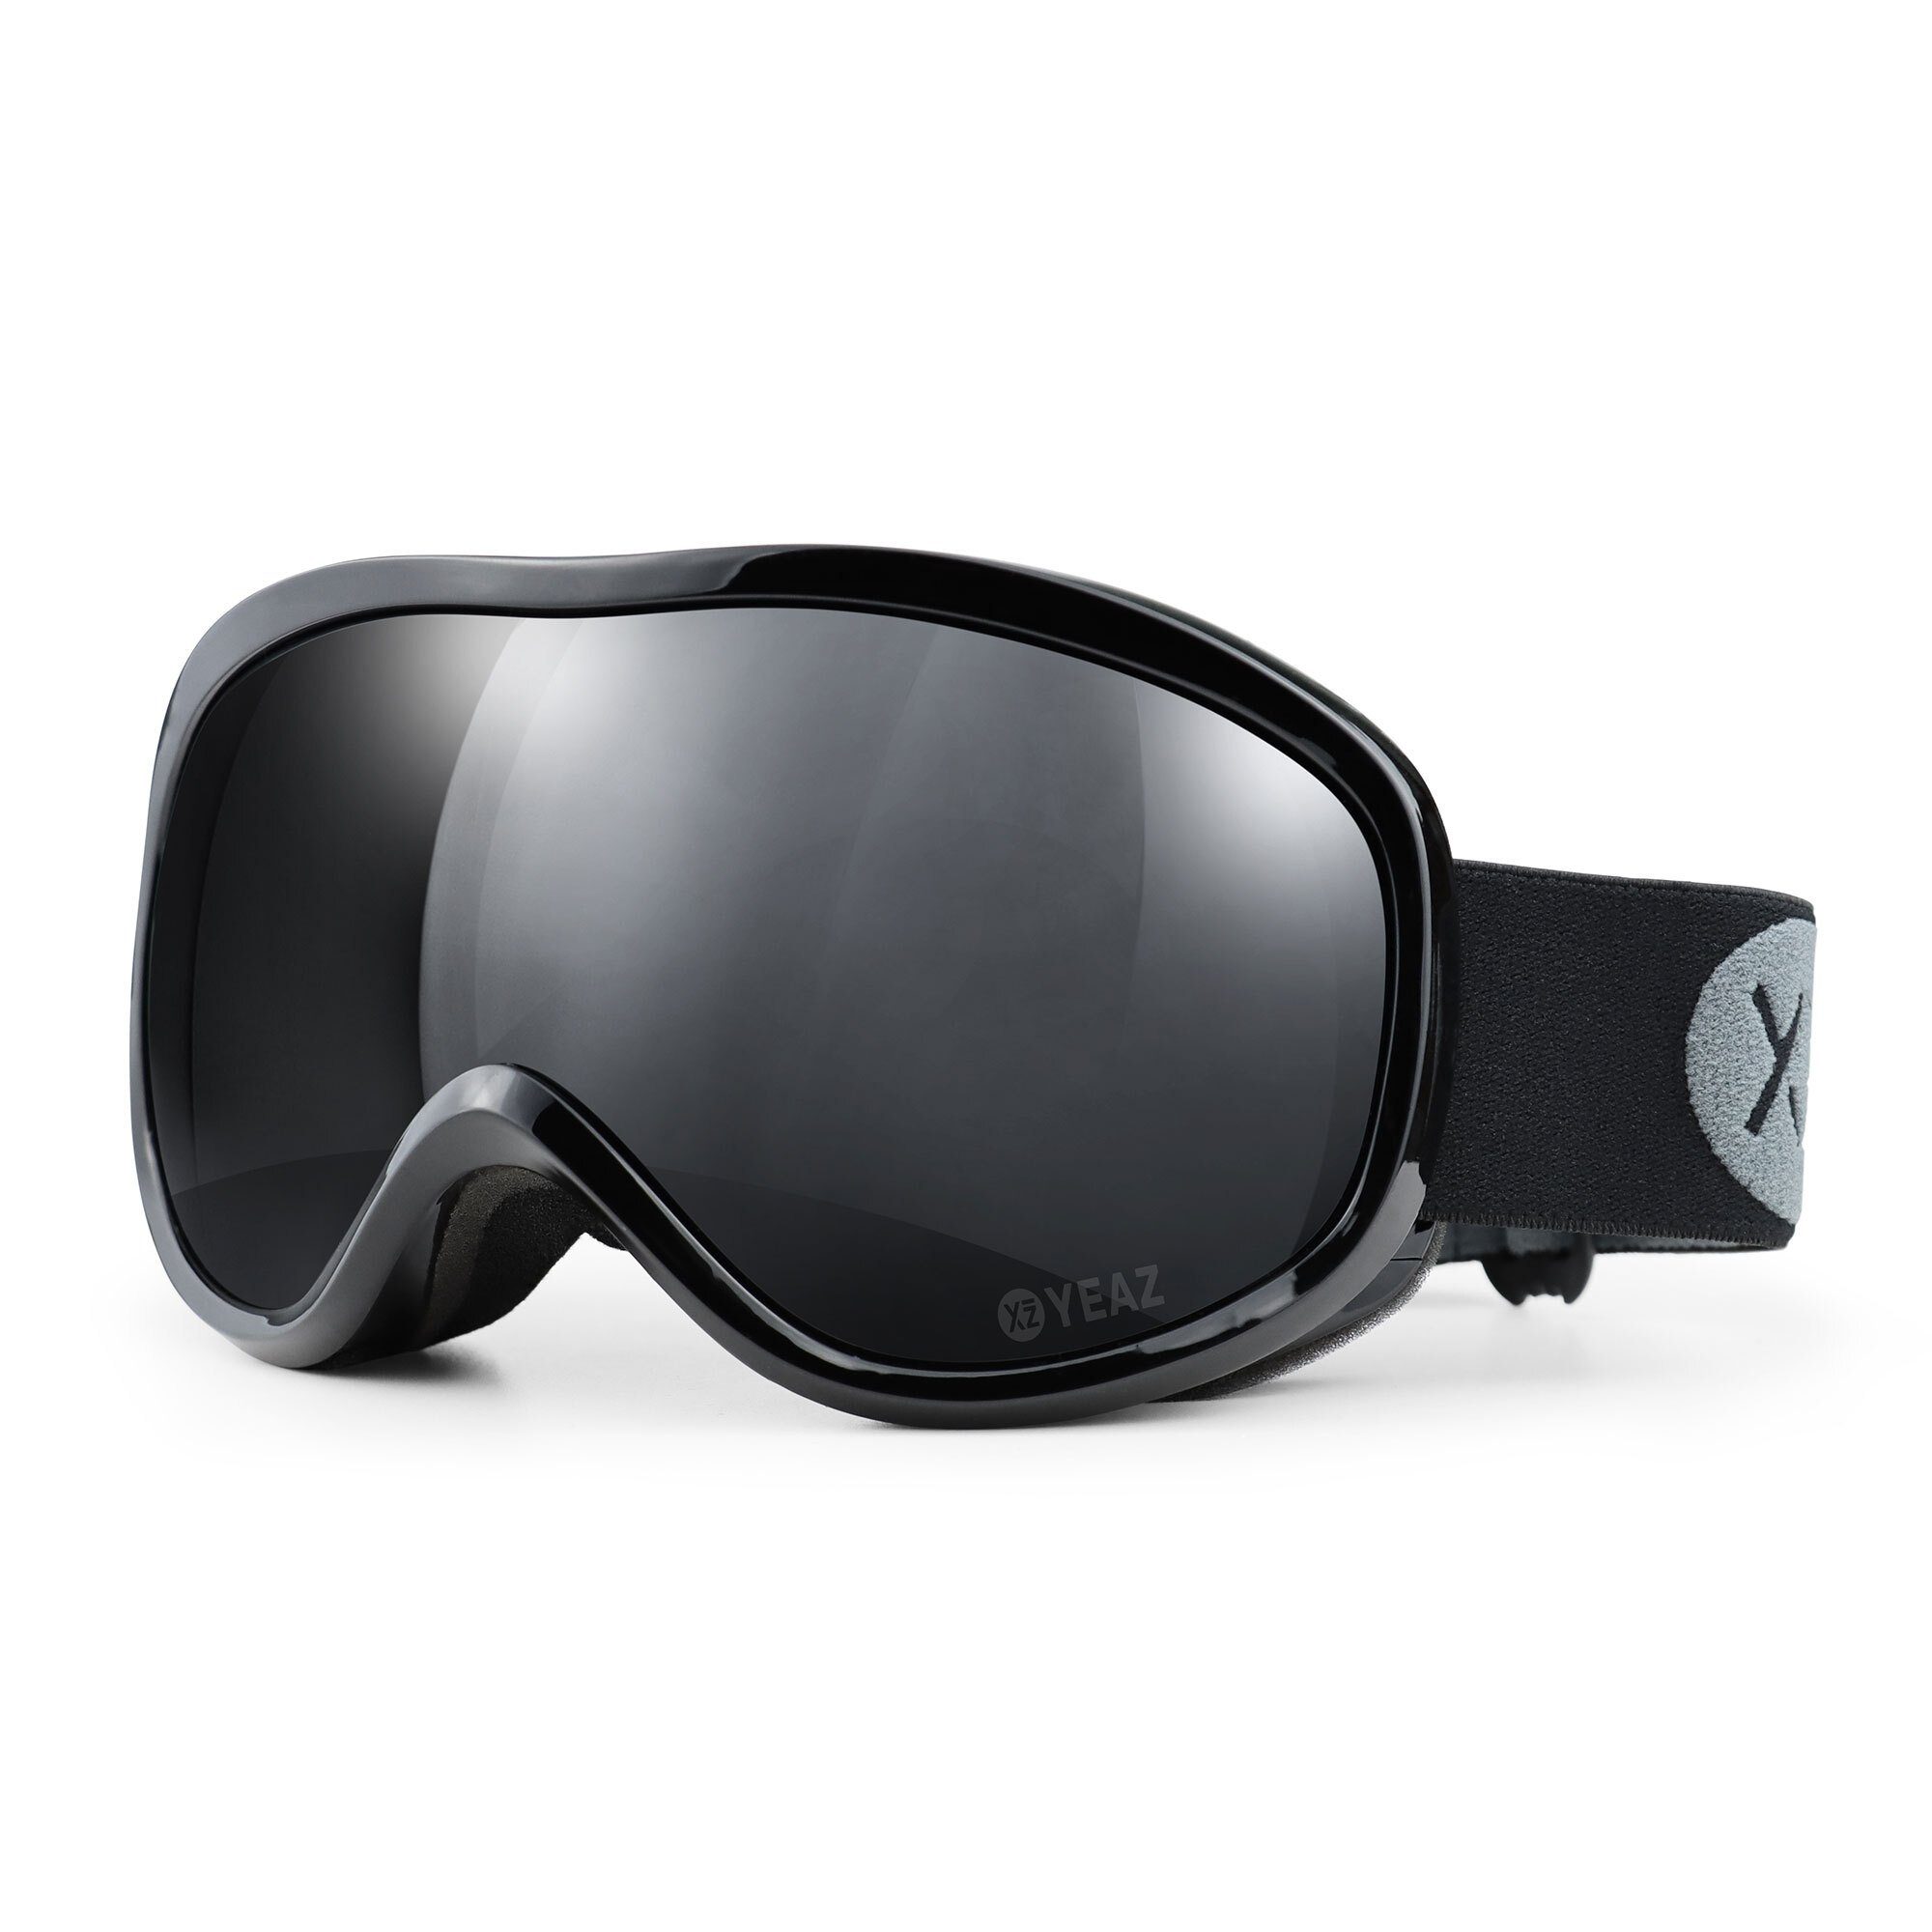 YEAZ Skibrille STEEZE ski- und snowboard-brille schwarz/schwarz, Premium-Ski- und Snowboardbrille für Erwachsene und Jugendliche